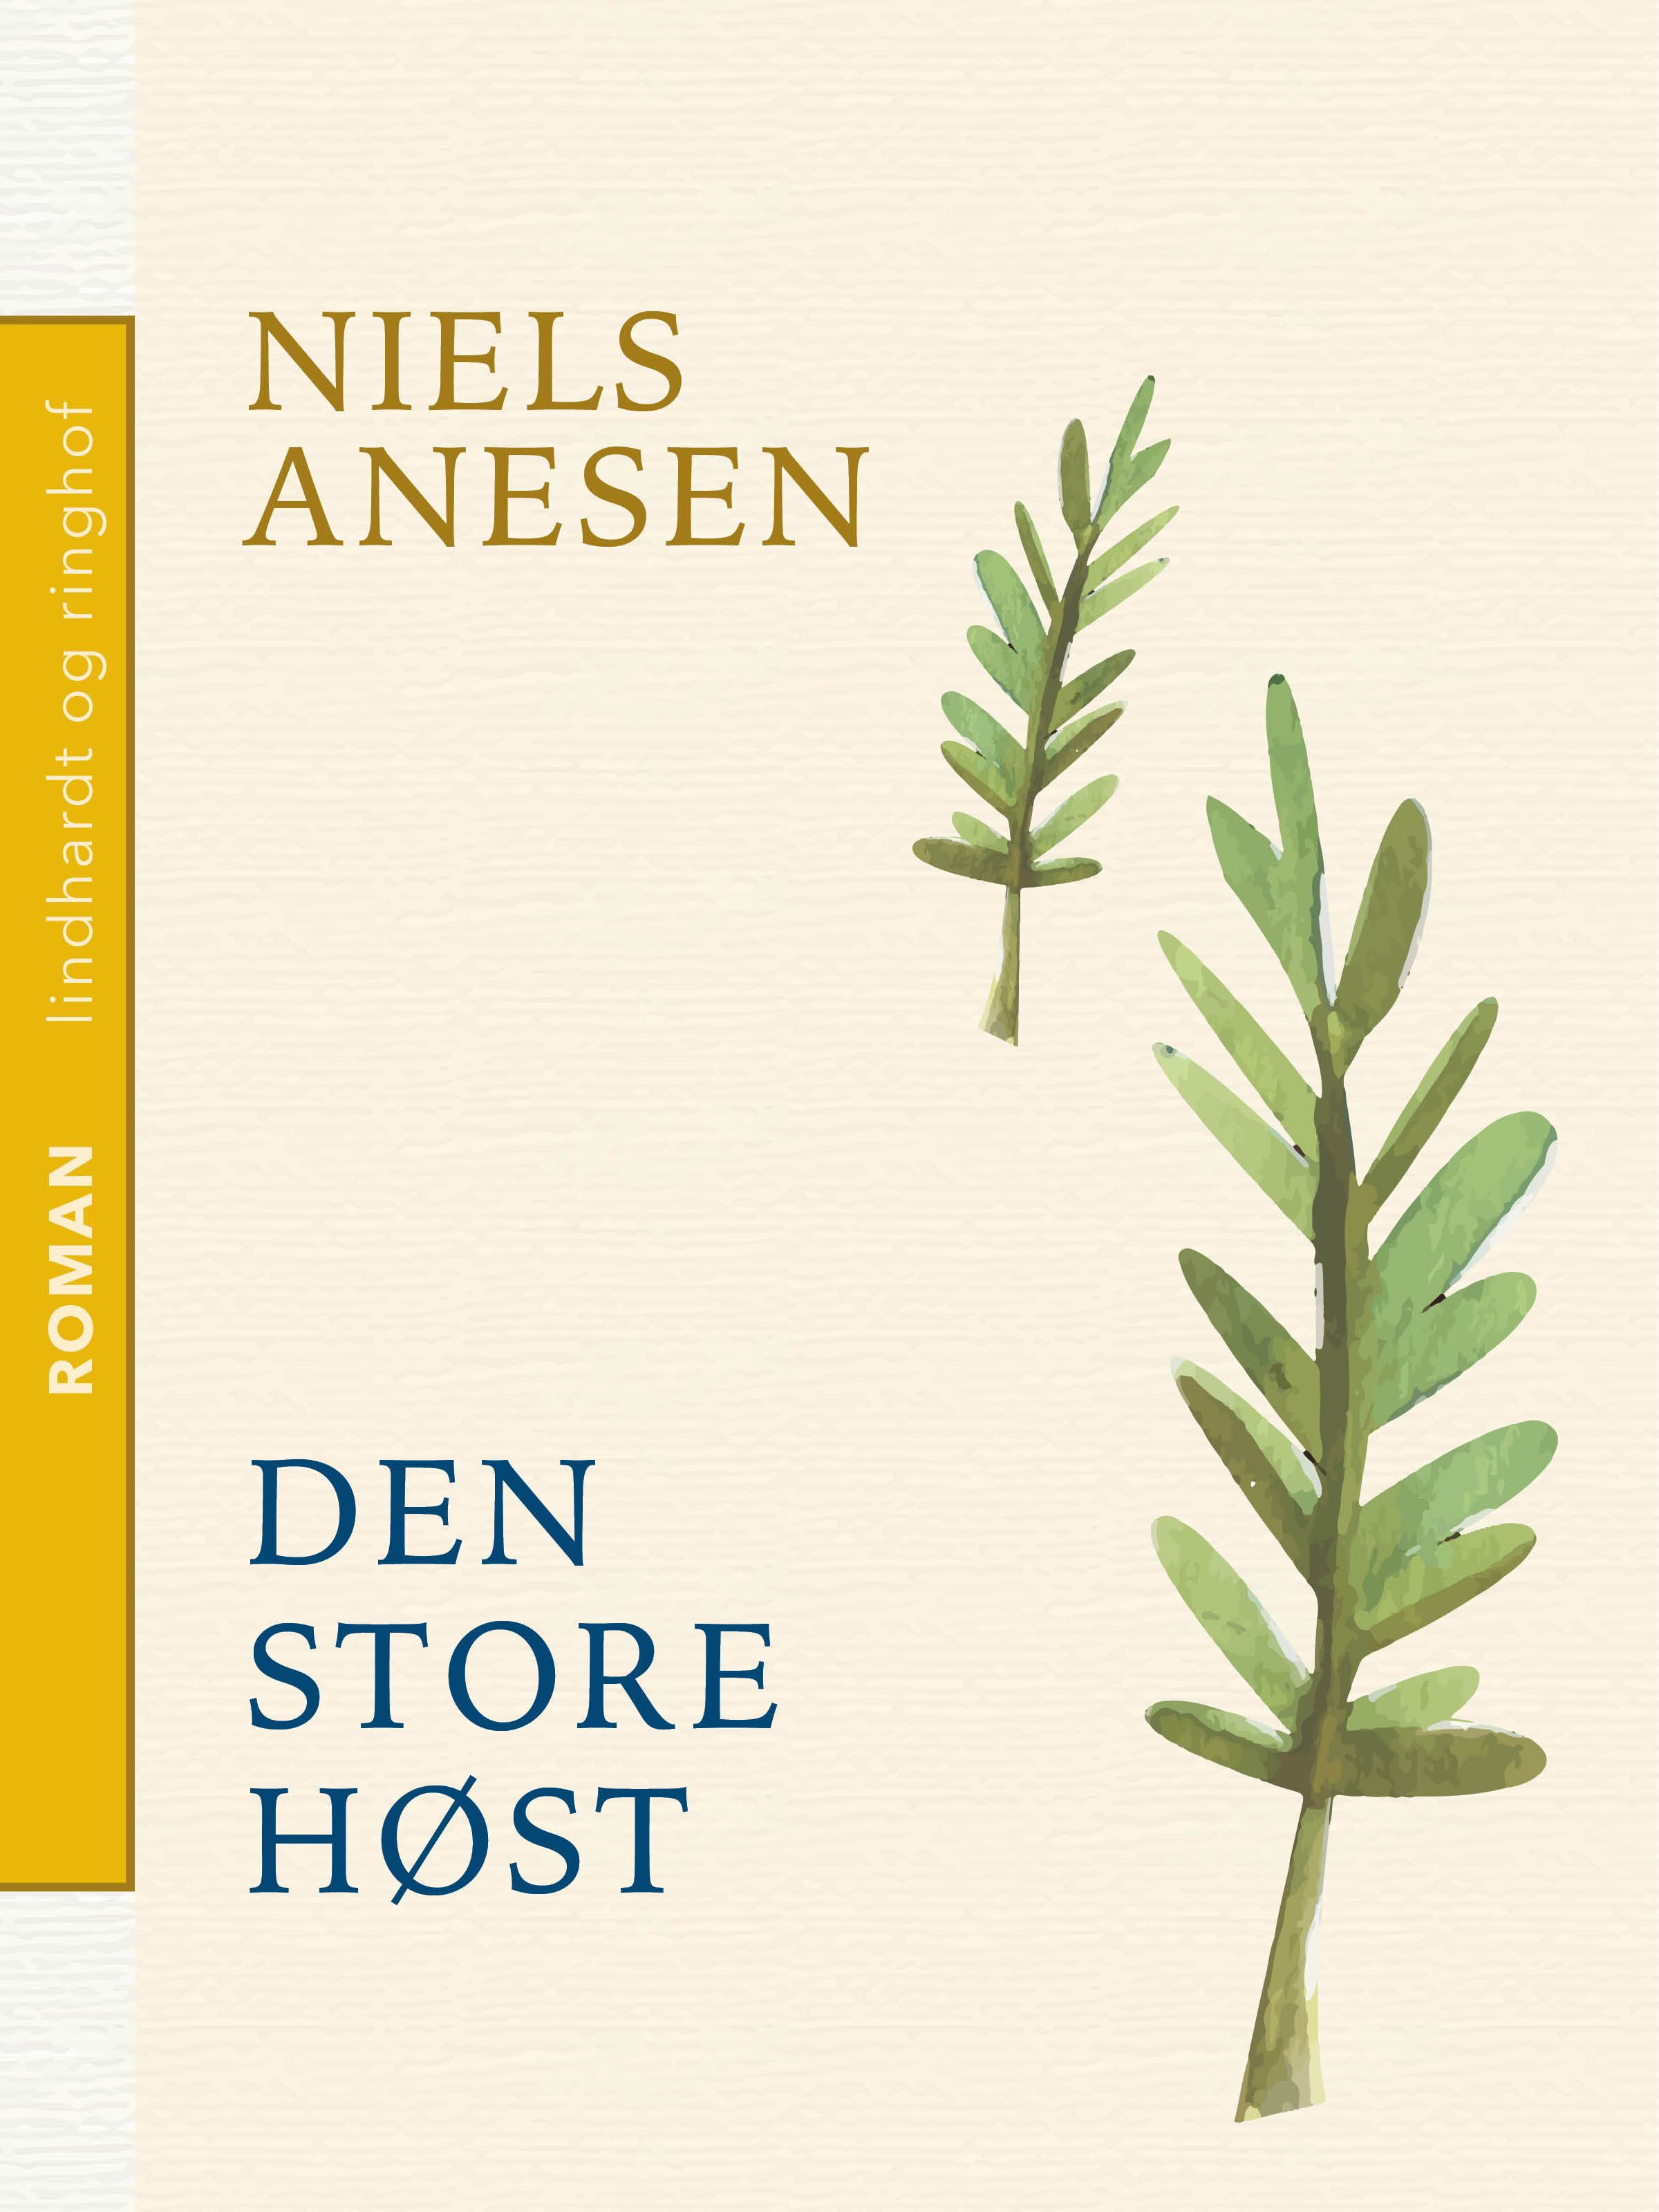 Den store høst, e-bog af Niels Anesen